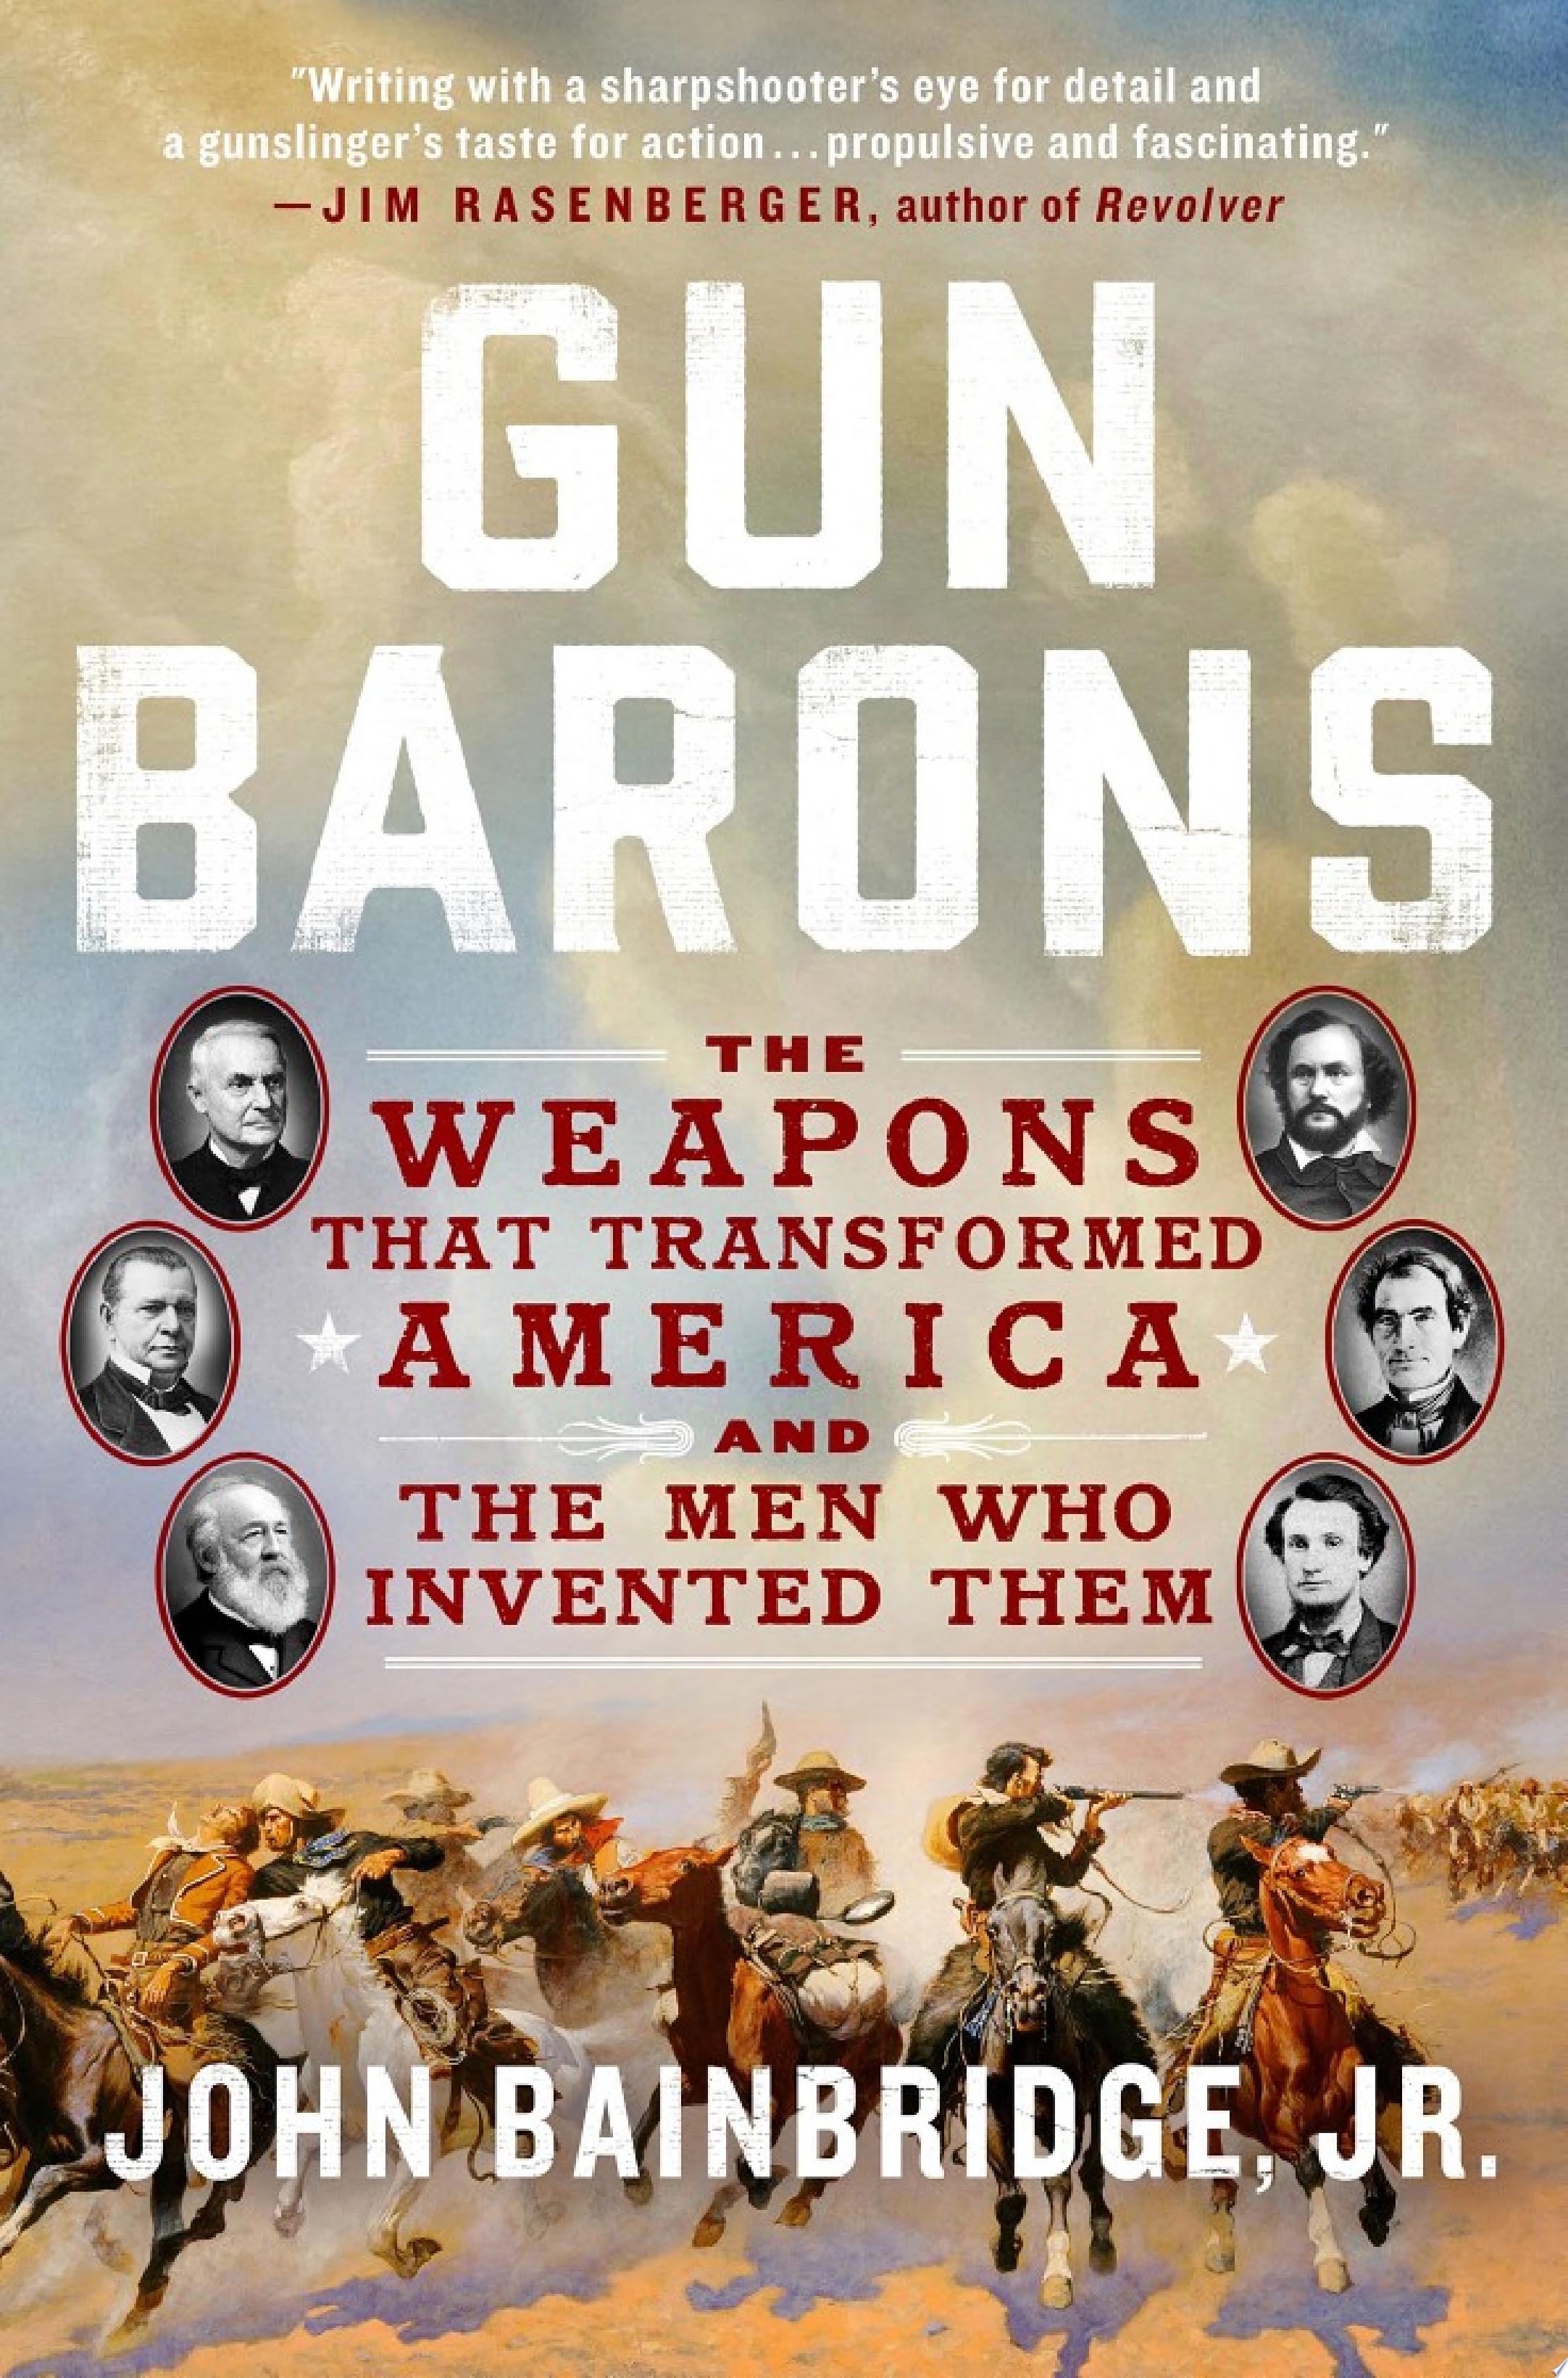 Image for "Gun Barons"